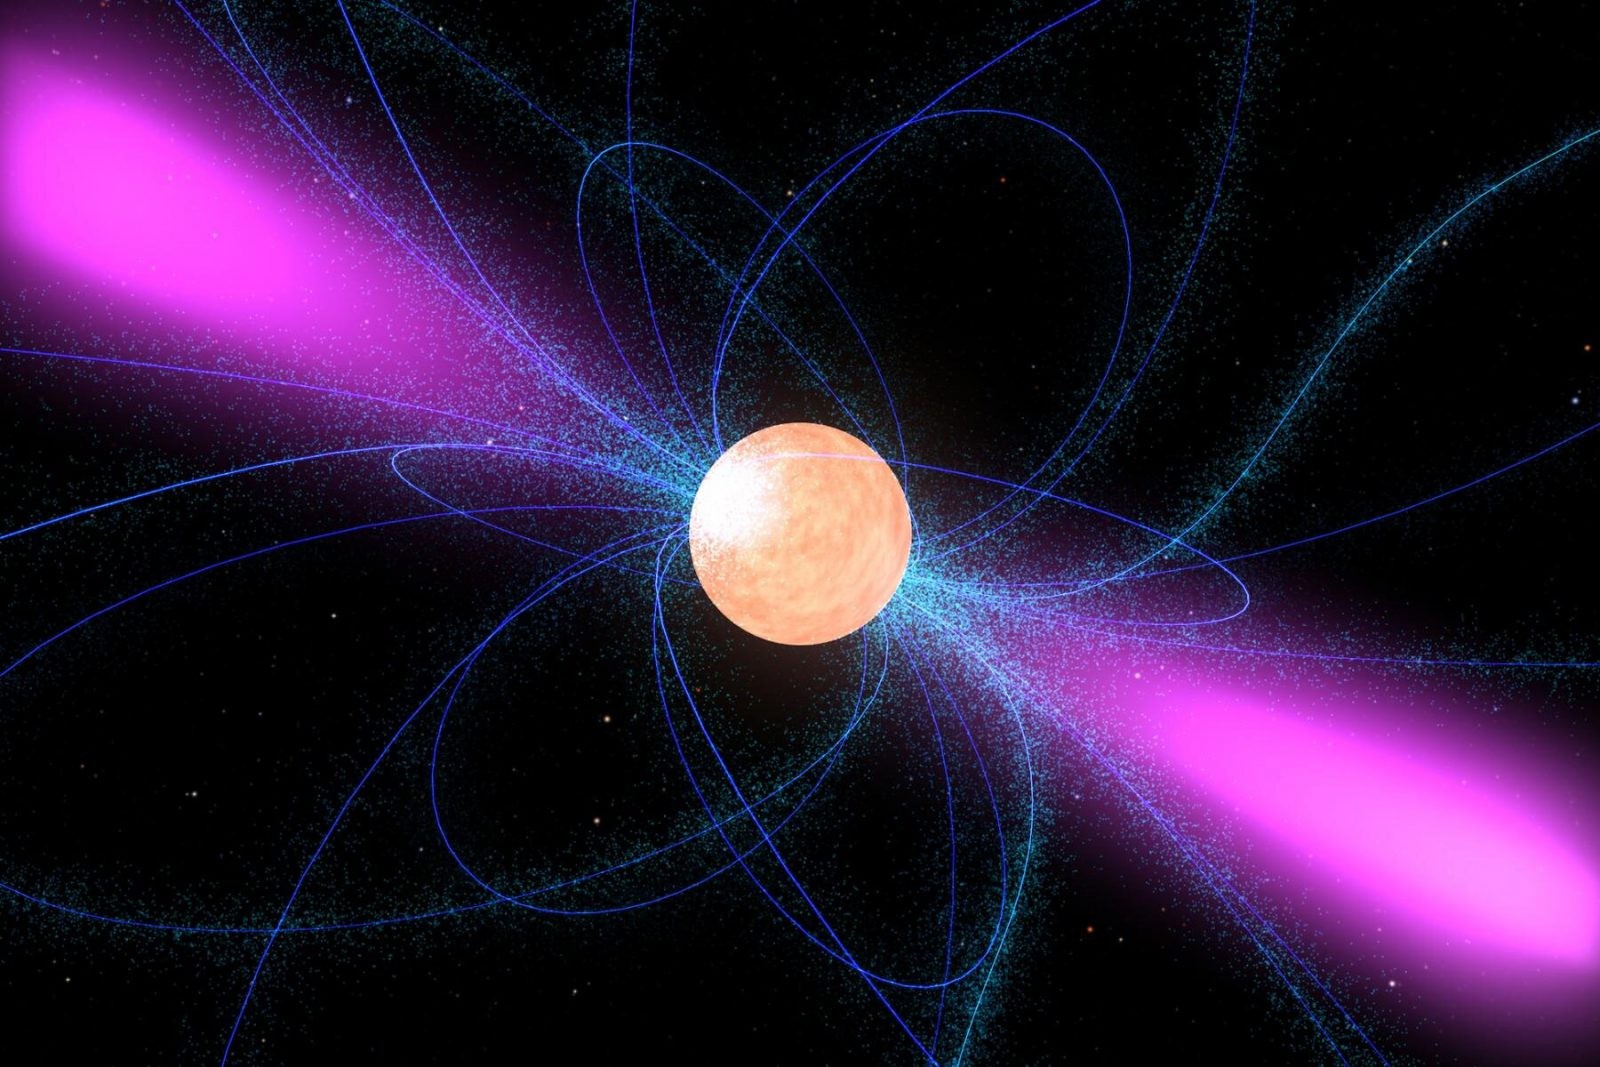 Jak wykryć ciemną materię? Użyjmy do tego gwiazd neutronowych, proponują naukowcy